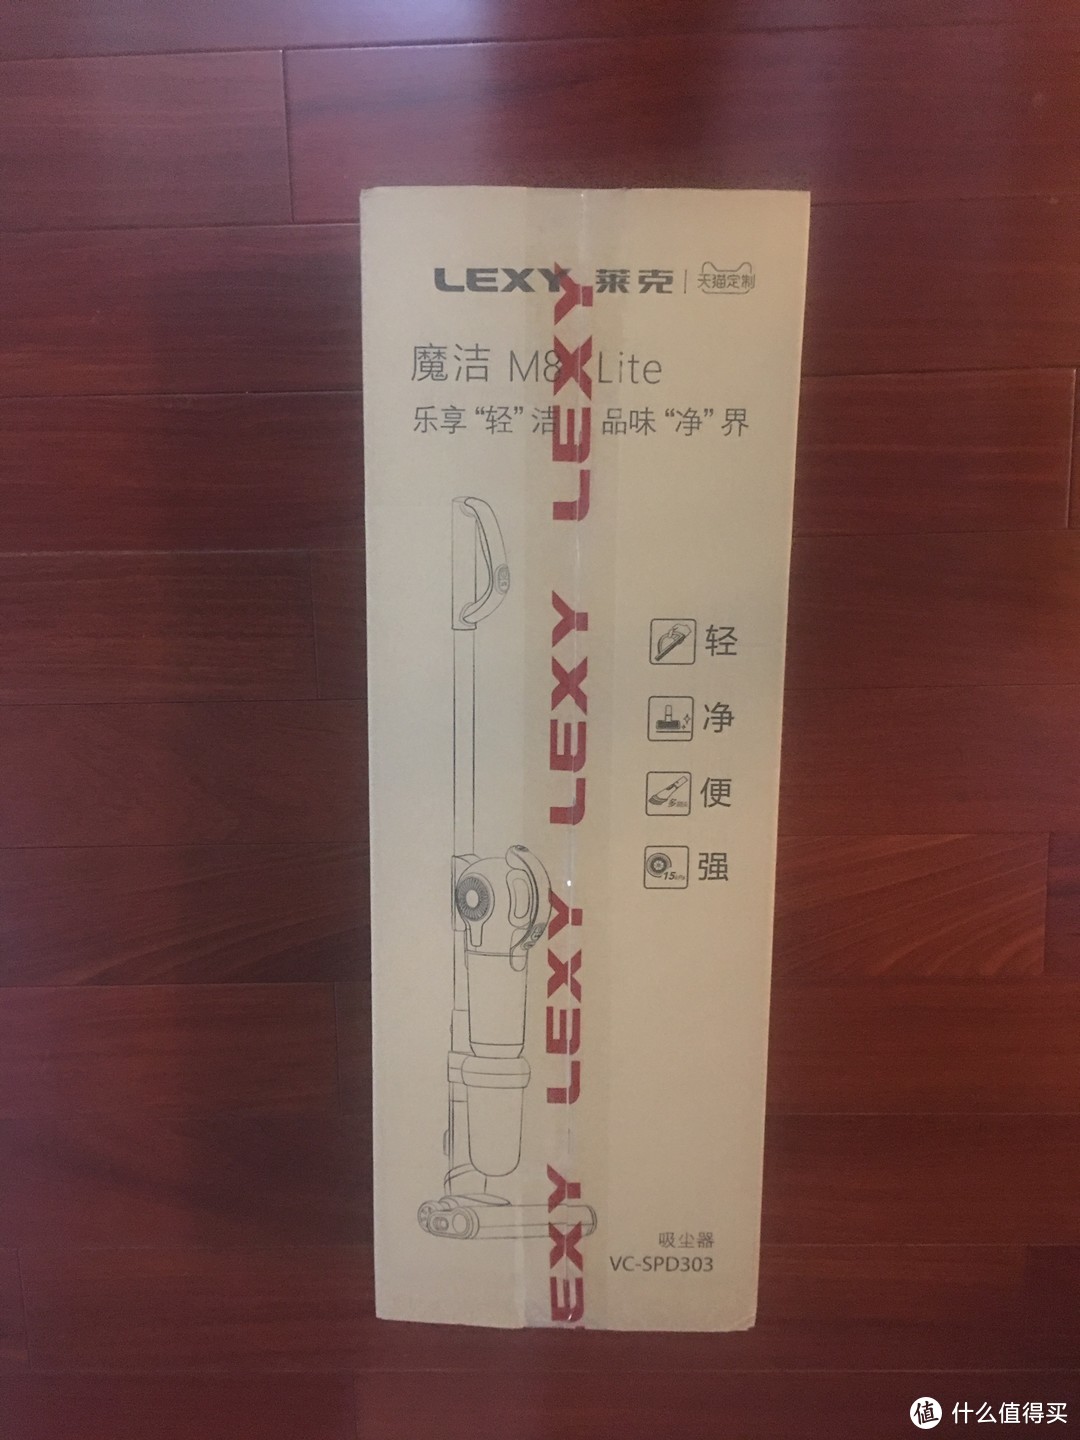 立式无线吸尘器的正确使用姿势——LEXY/莱克 魔洁M8 Lite立式多功能吸尘器评测报告